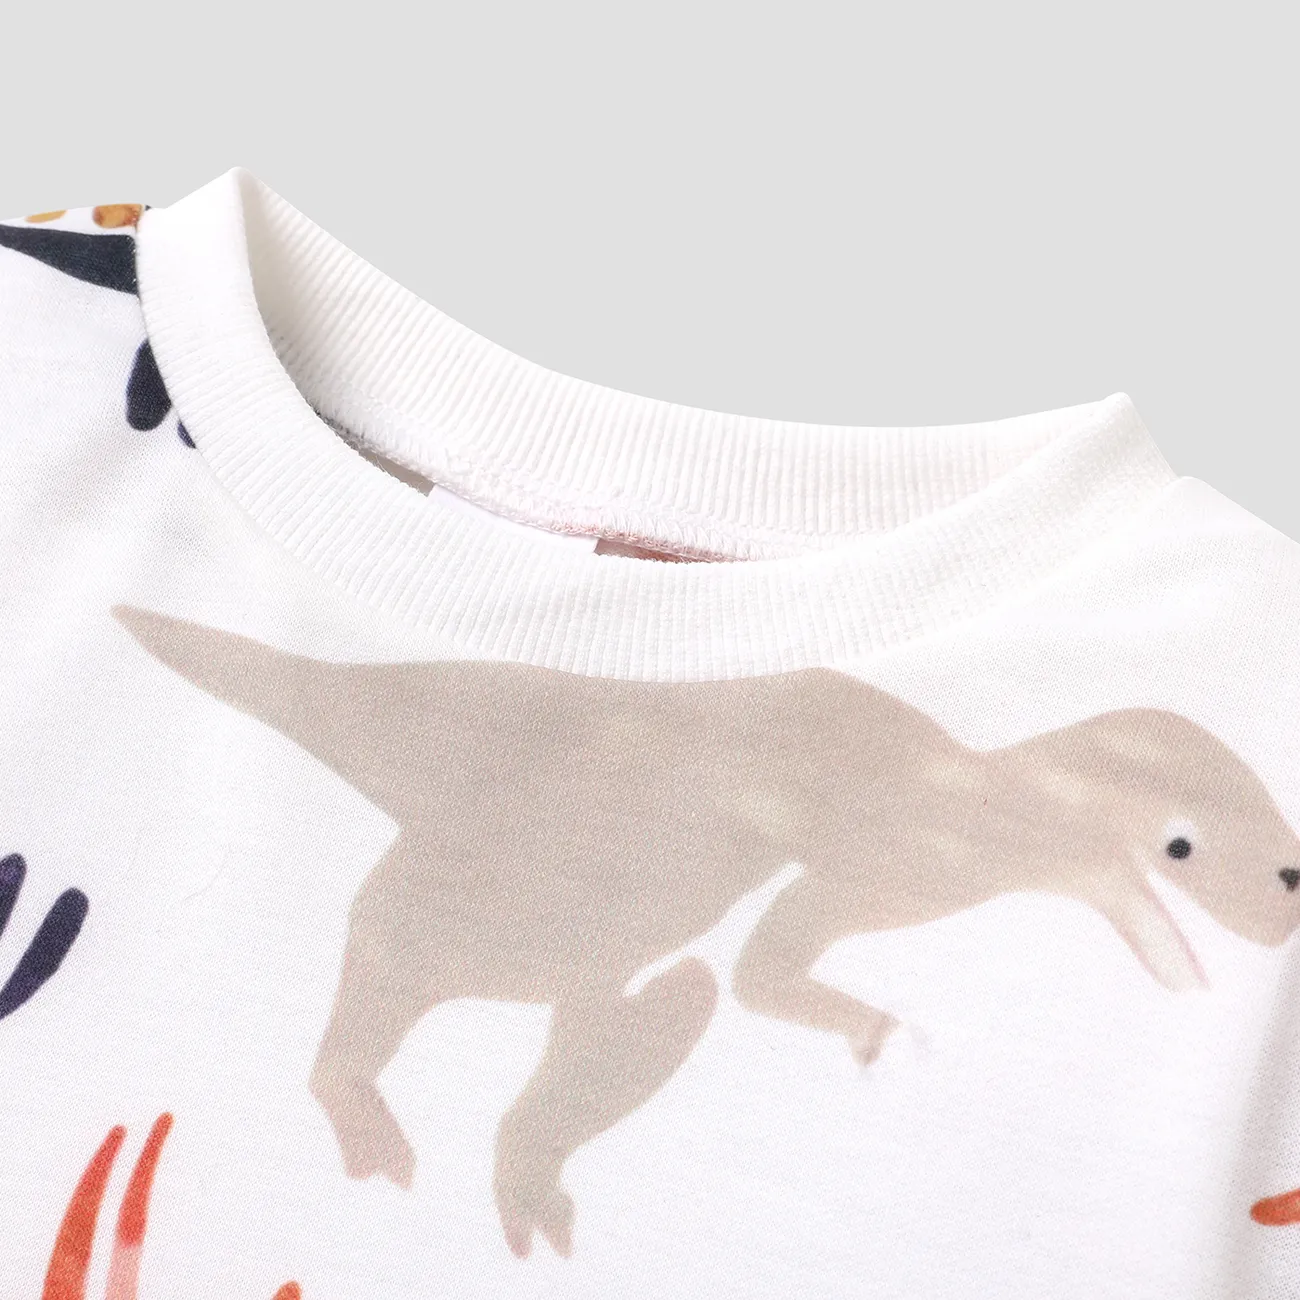 Toddler Boy Animal Dinosaur Print Pullover Sweatshirt White big image 1